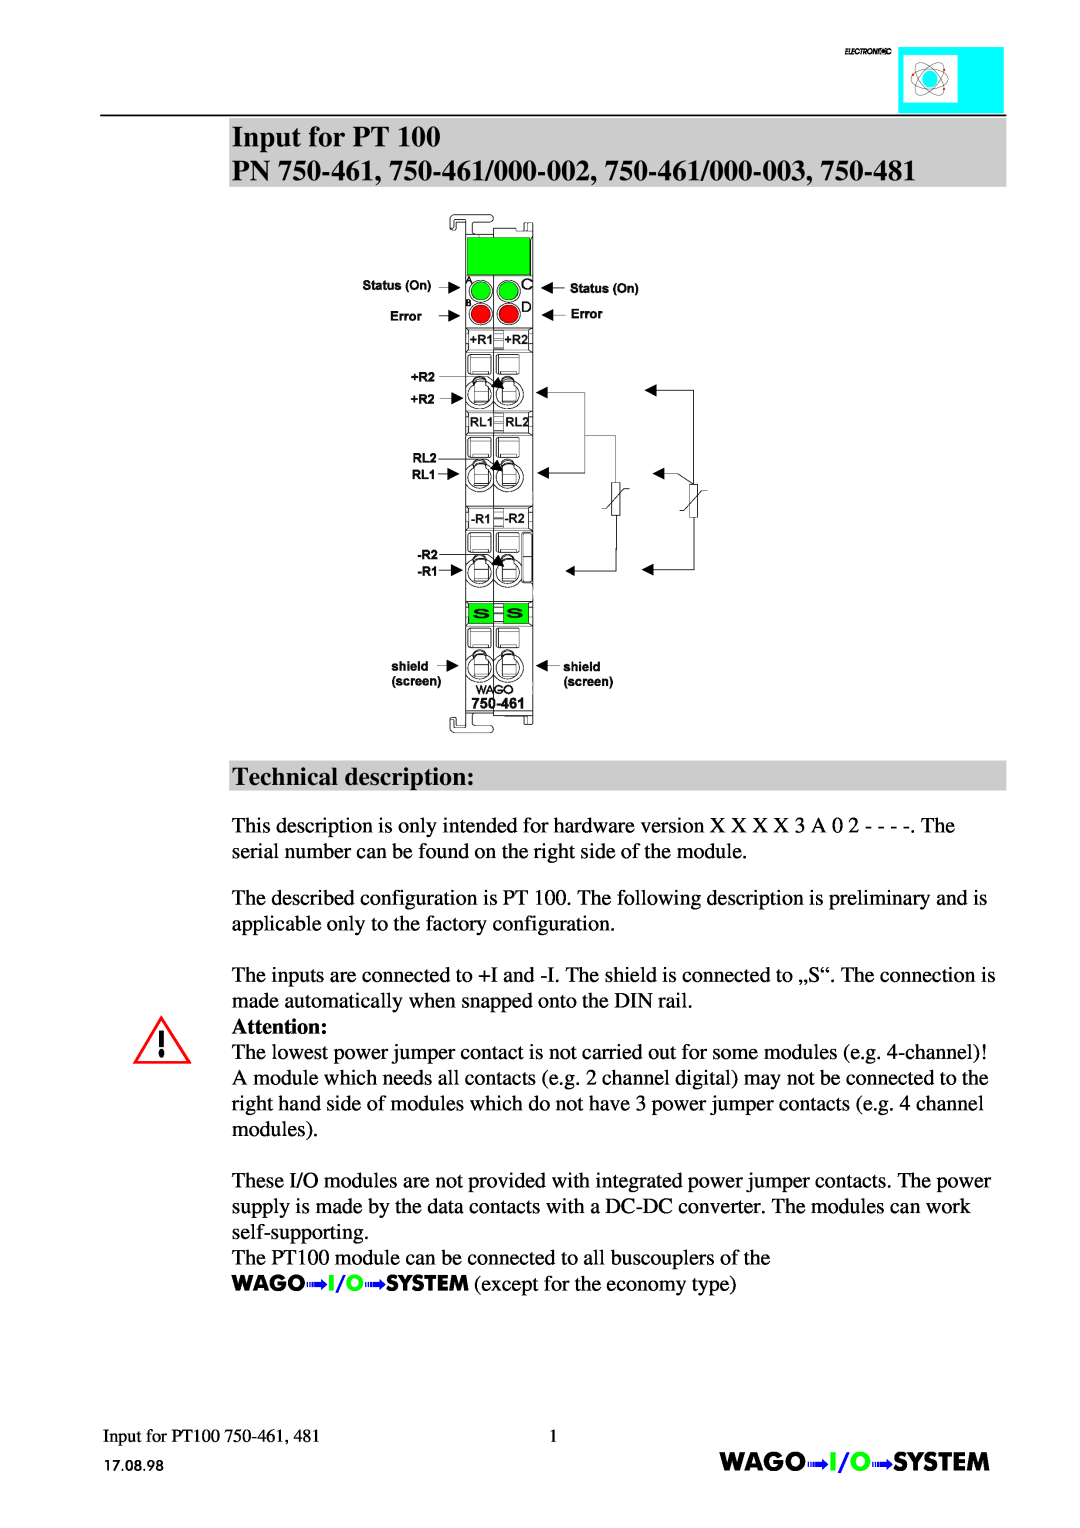 Quatech INTERBUS S manual Input for PT PN 750-461, 750-461/000-002, 750-461/000-003, Technical description, Inputfor PT100 